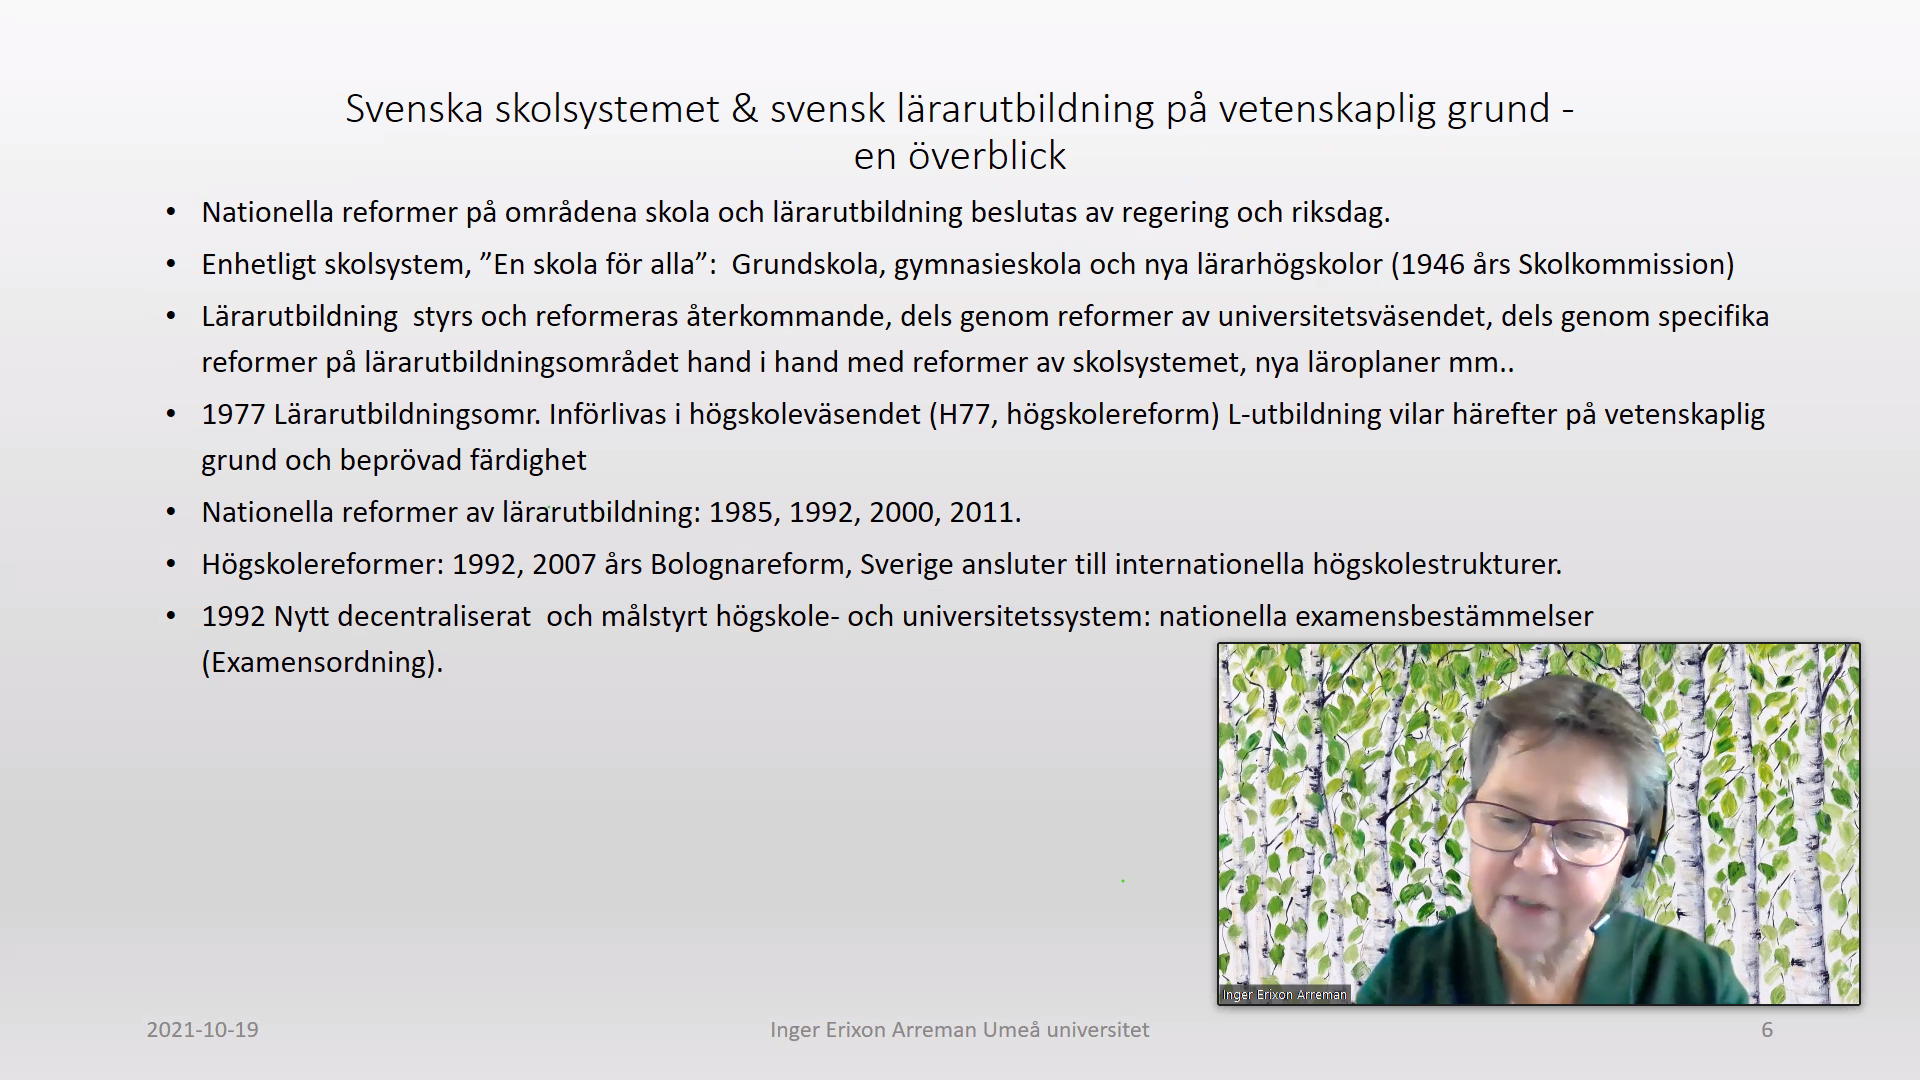 Föredragshållare var Inger Erixon Arreman, fil dr och docent, vid institutionen för Tillämpad utbildningsvetenskap, Umeå universitet